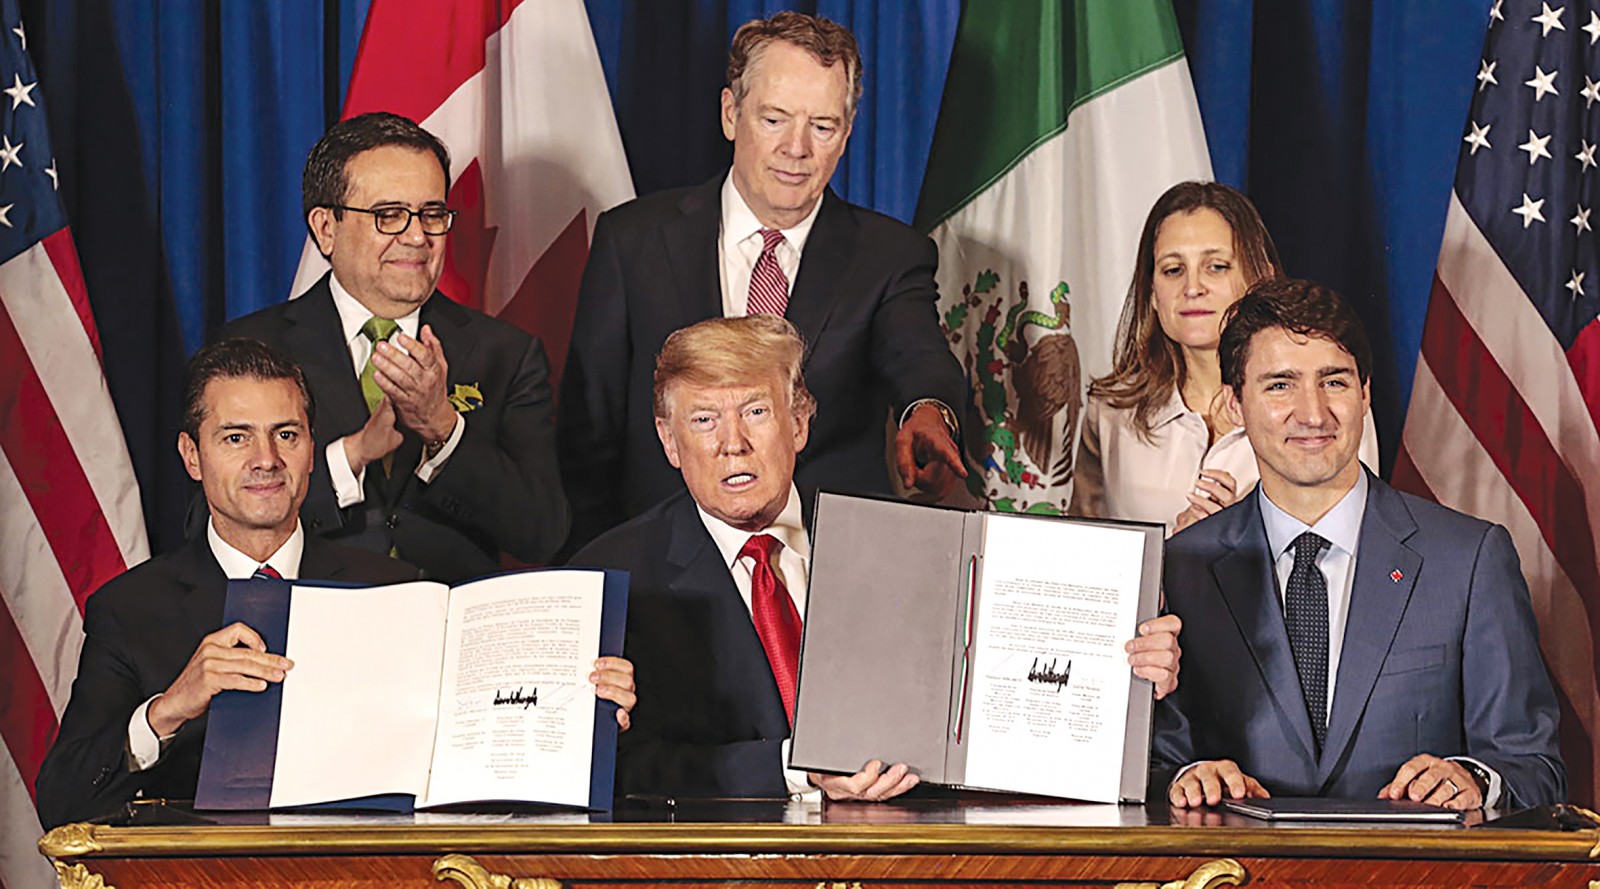 Thỏa thuận USMCA có lợi cho Mỹ và phù hợp với nỗ lực của Tổng thống Trump nhằm cô lập kinh tế Trung Quốc. Ảnh: Global News